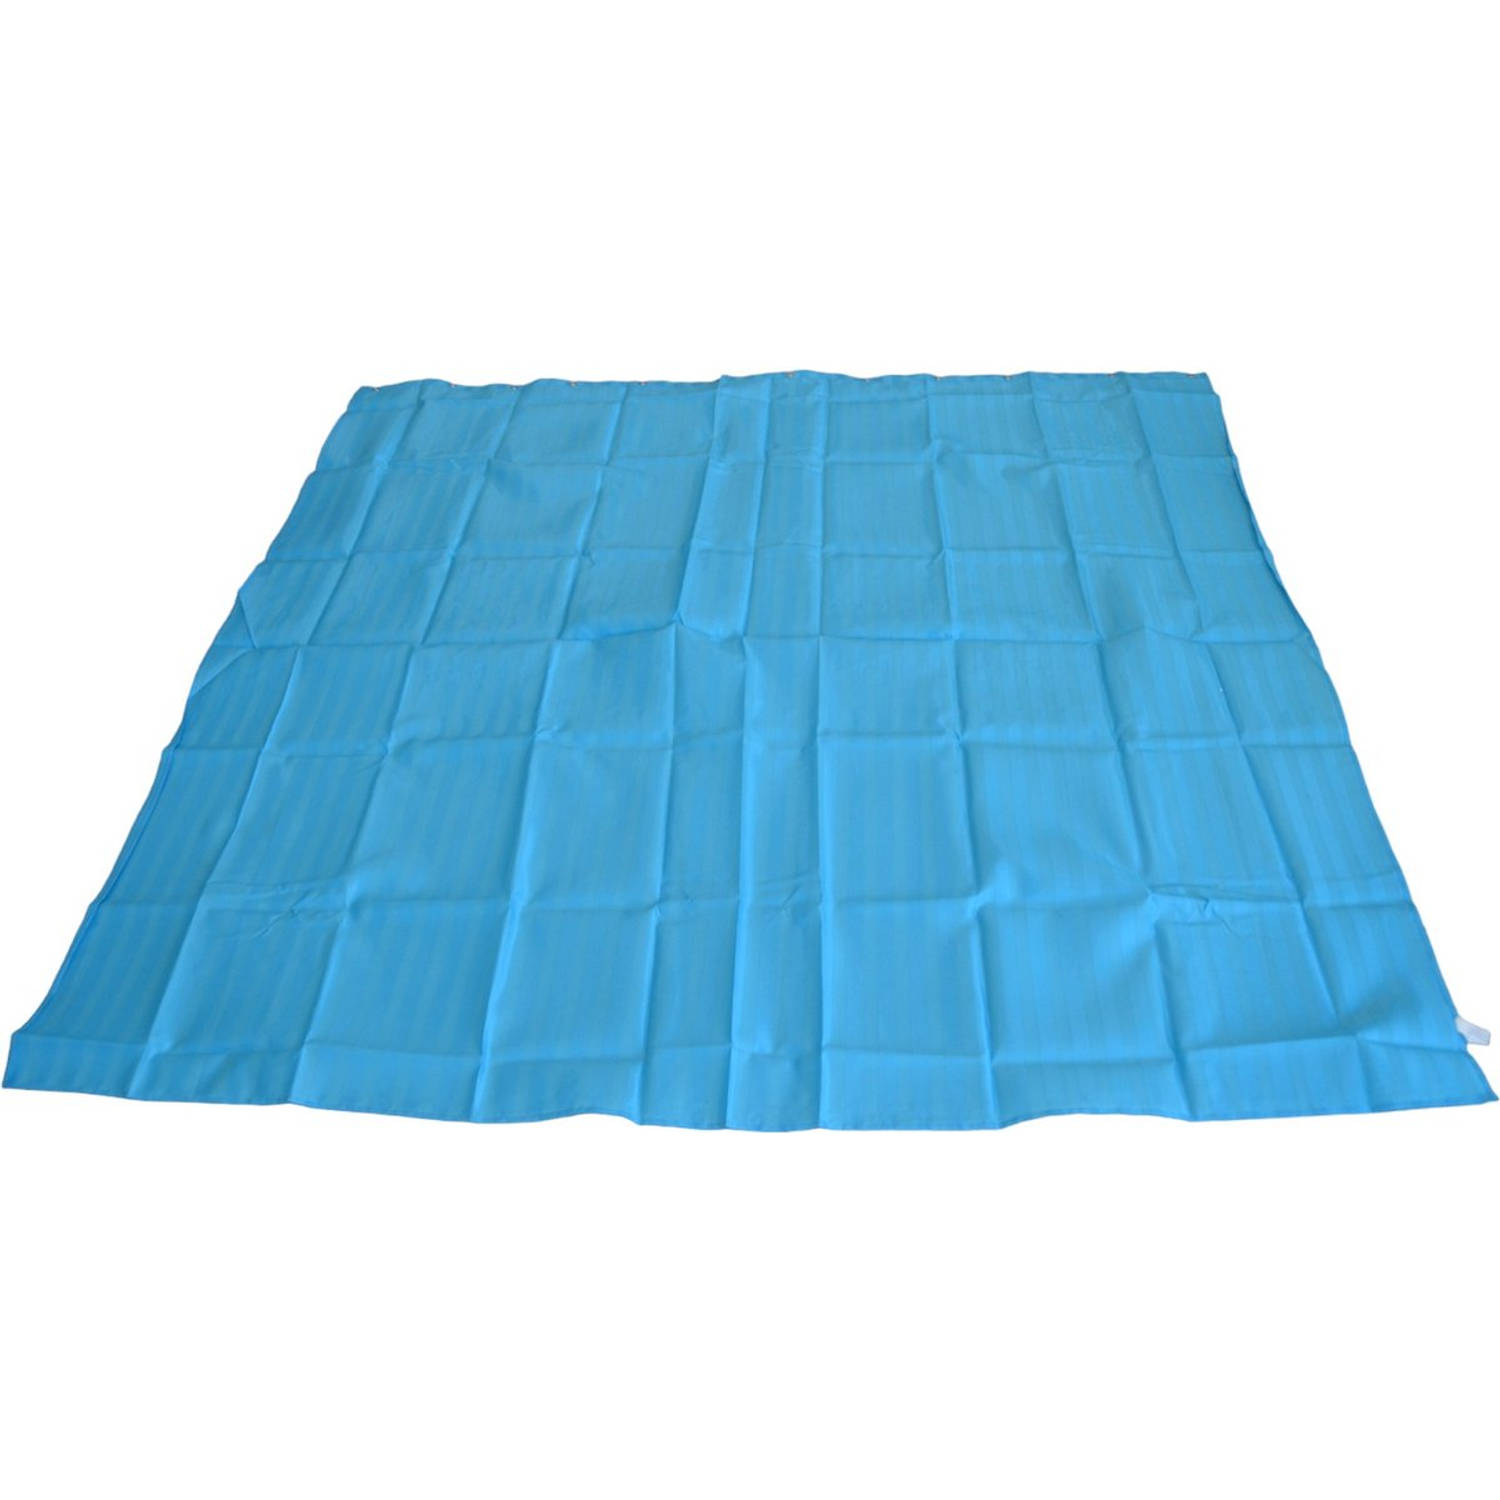 Douchegordijn - Blauw - 180 cm x 180 cm - Inclusief ringen - Anti Schimmel - Polyester - Badgordijn